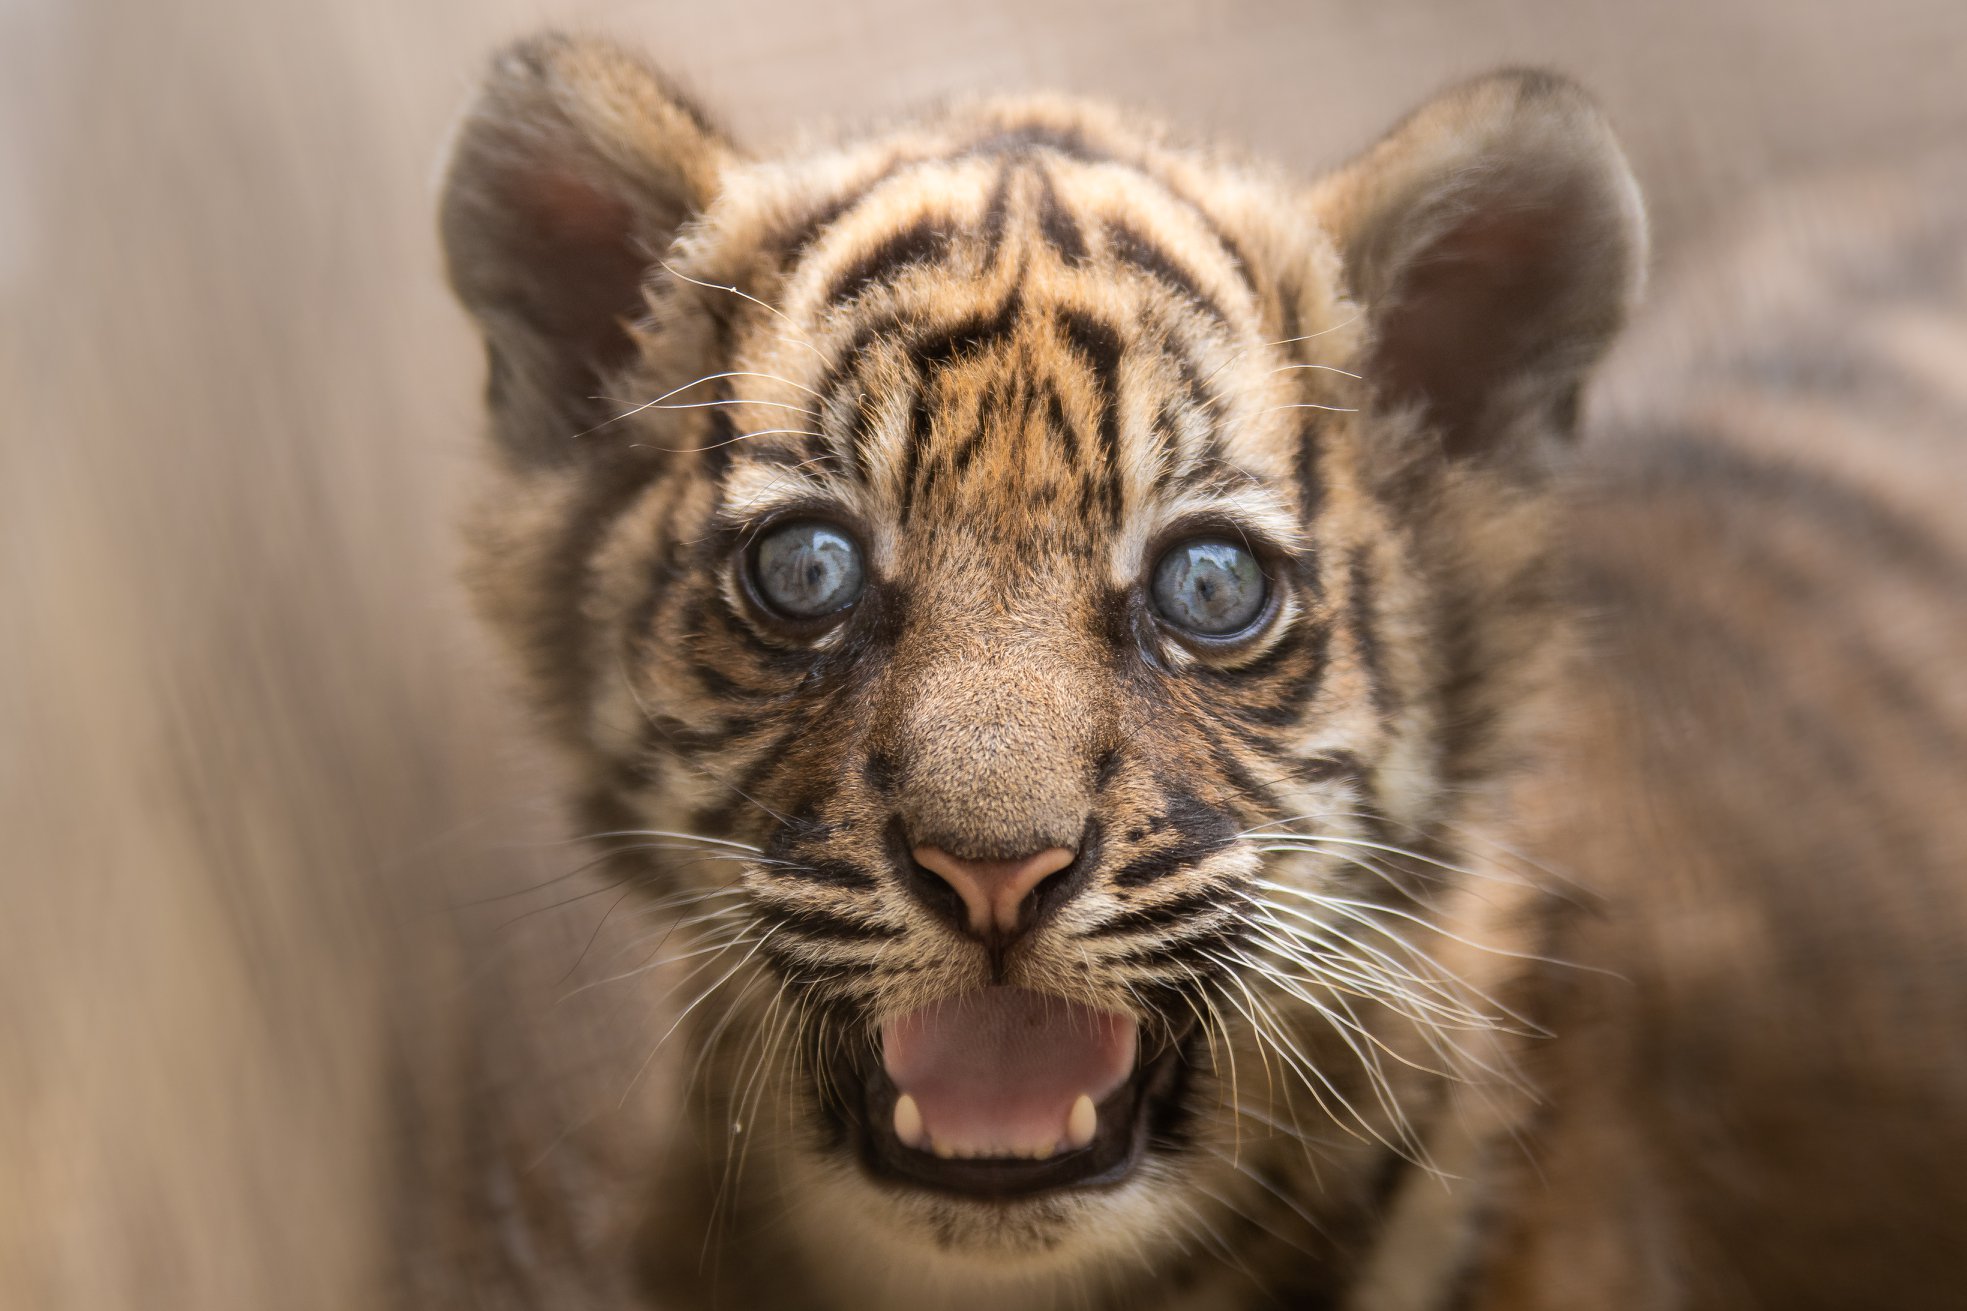 حديقة حيوان بولندية تبحث عن اسم نمر نادر مولود حديثا   (1)